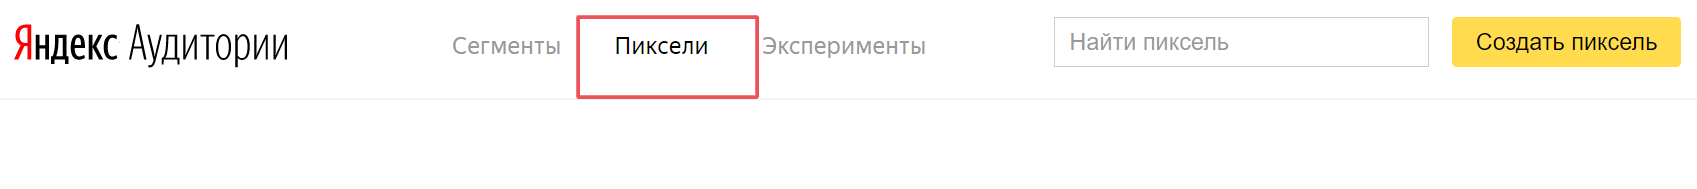 Раздел пикселя в Яндекс Аудиториях